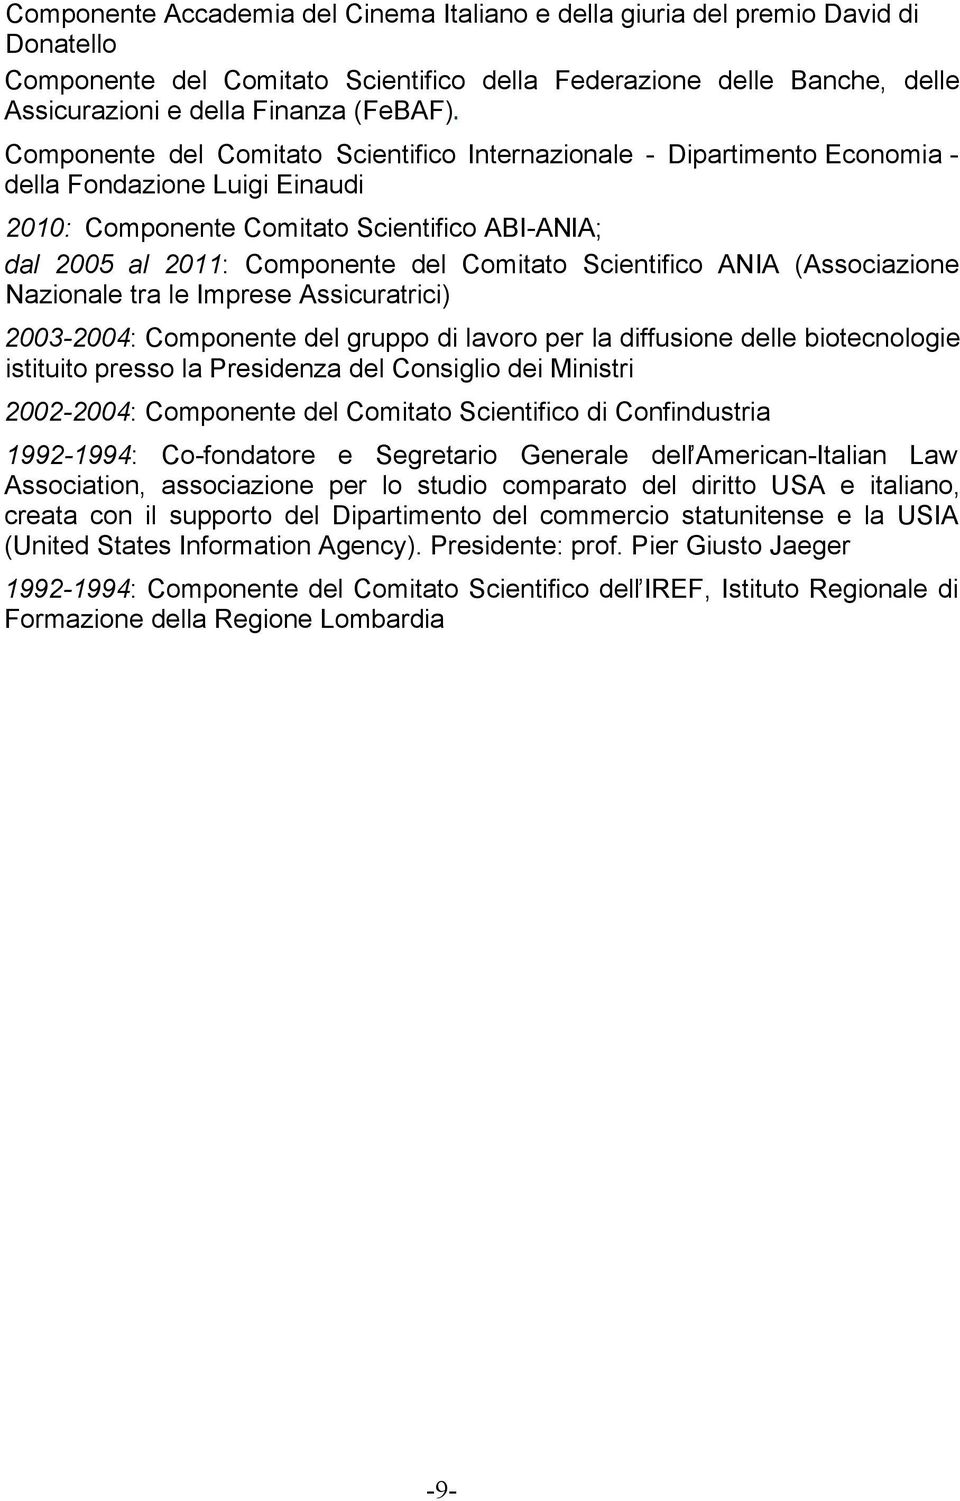 Scientifico ANIA (Associazione Nazionale tra le Imprese Assicuratrici) 2003-2004: Componente del gruppo di lavoro per la diffusione delle biotecnologie istituito presso la Presidenza del Consiglio